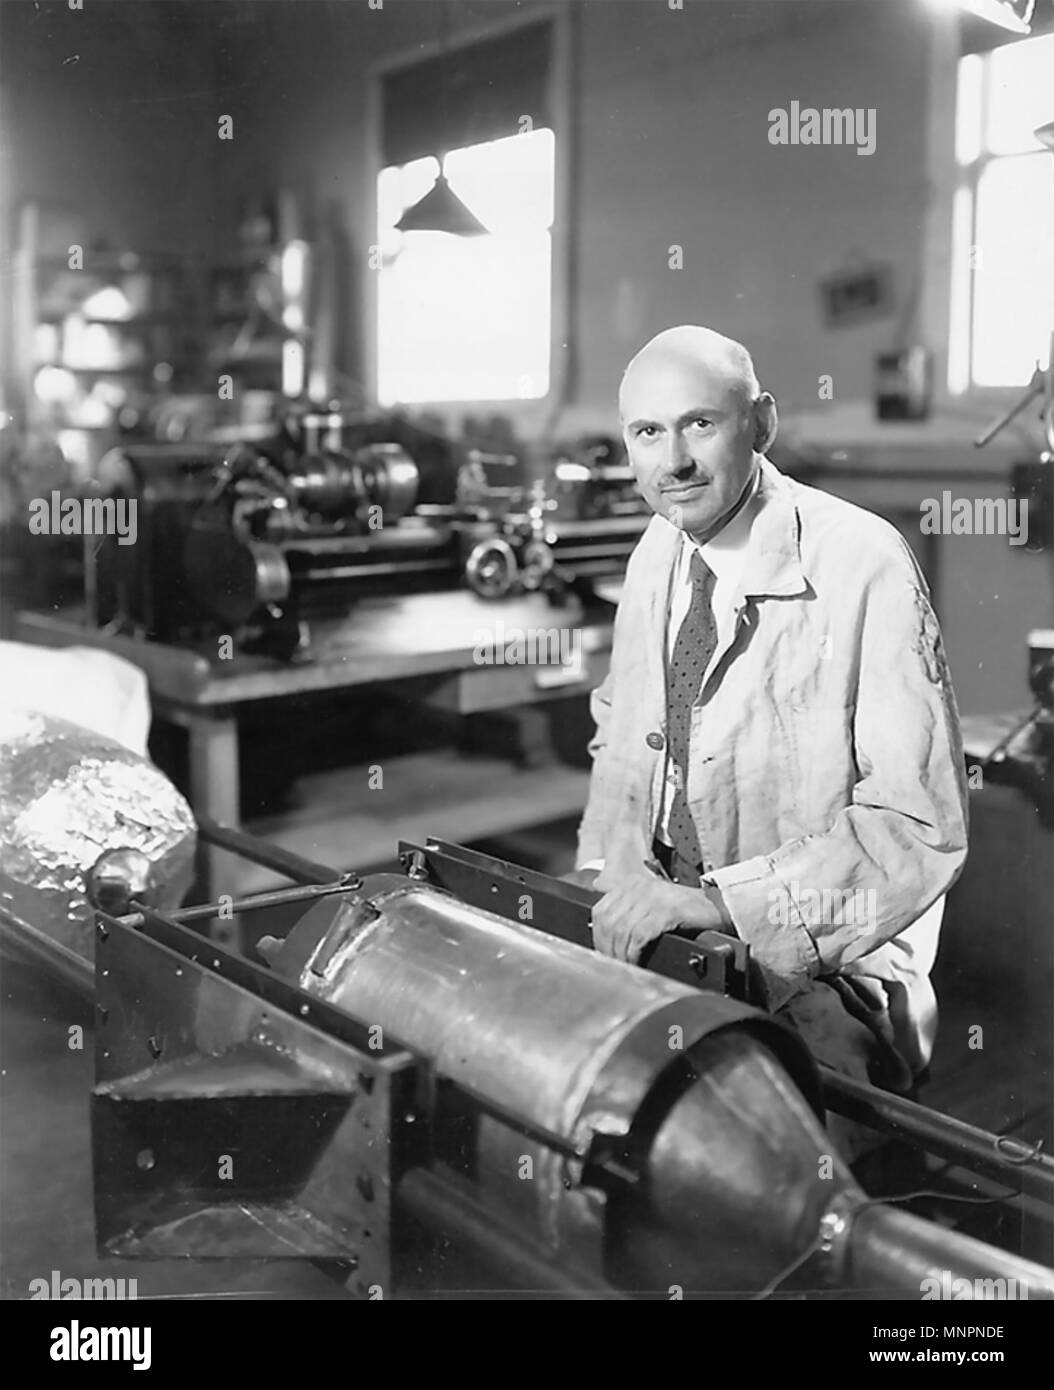 ROBERT GODDARD (1882-1945), ingeniero estadounidense y pionero diseñador de los cohetes de combustible líquido Foto de stock